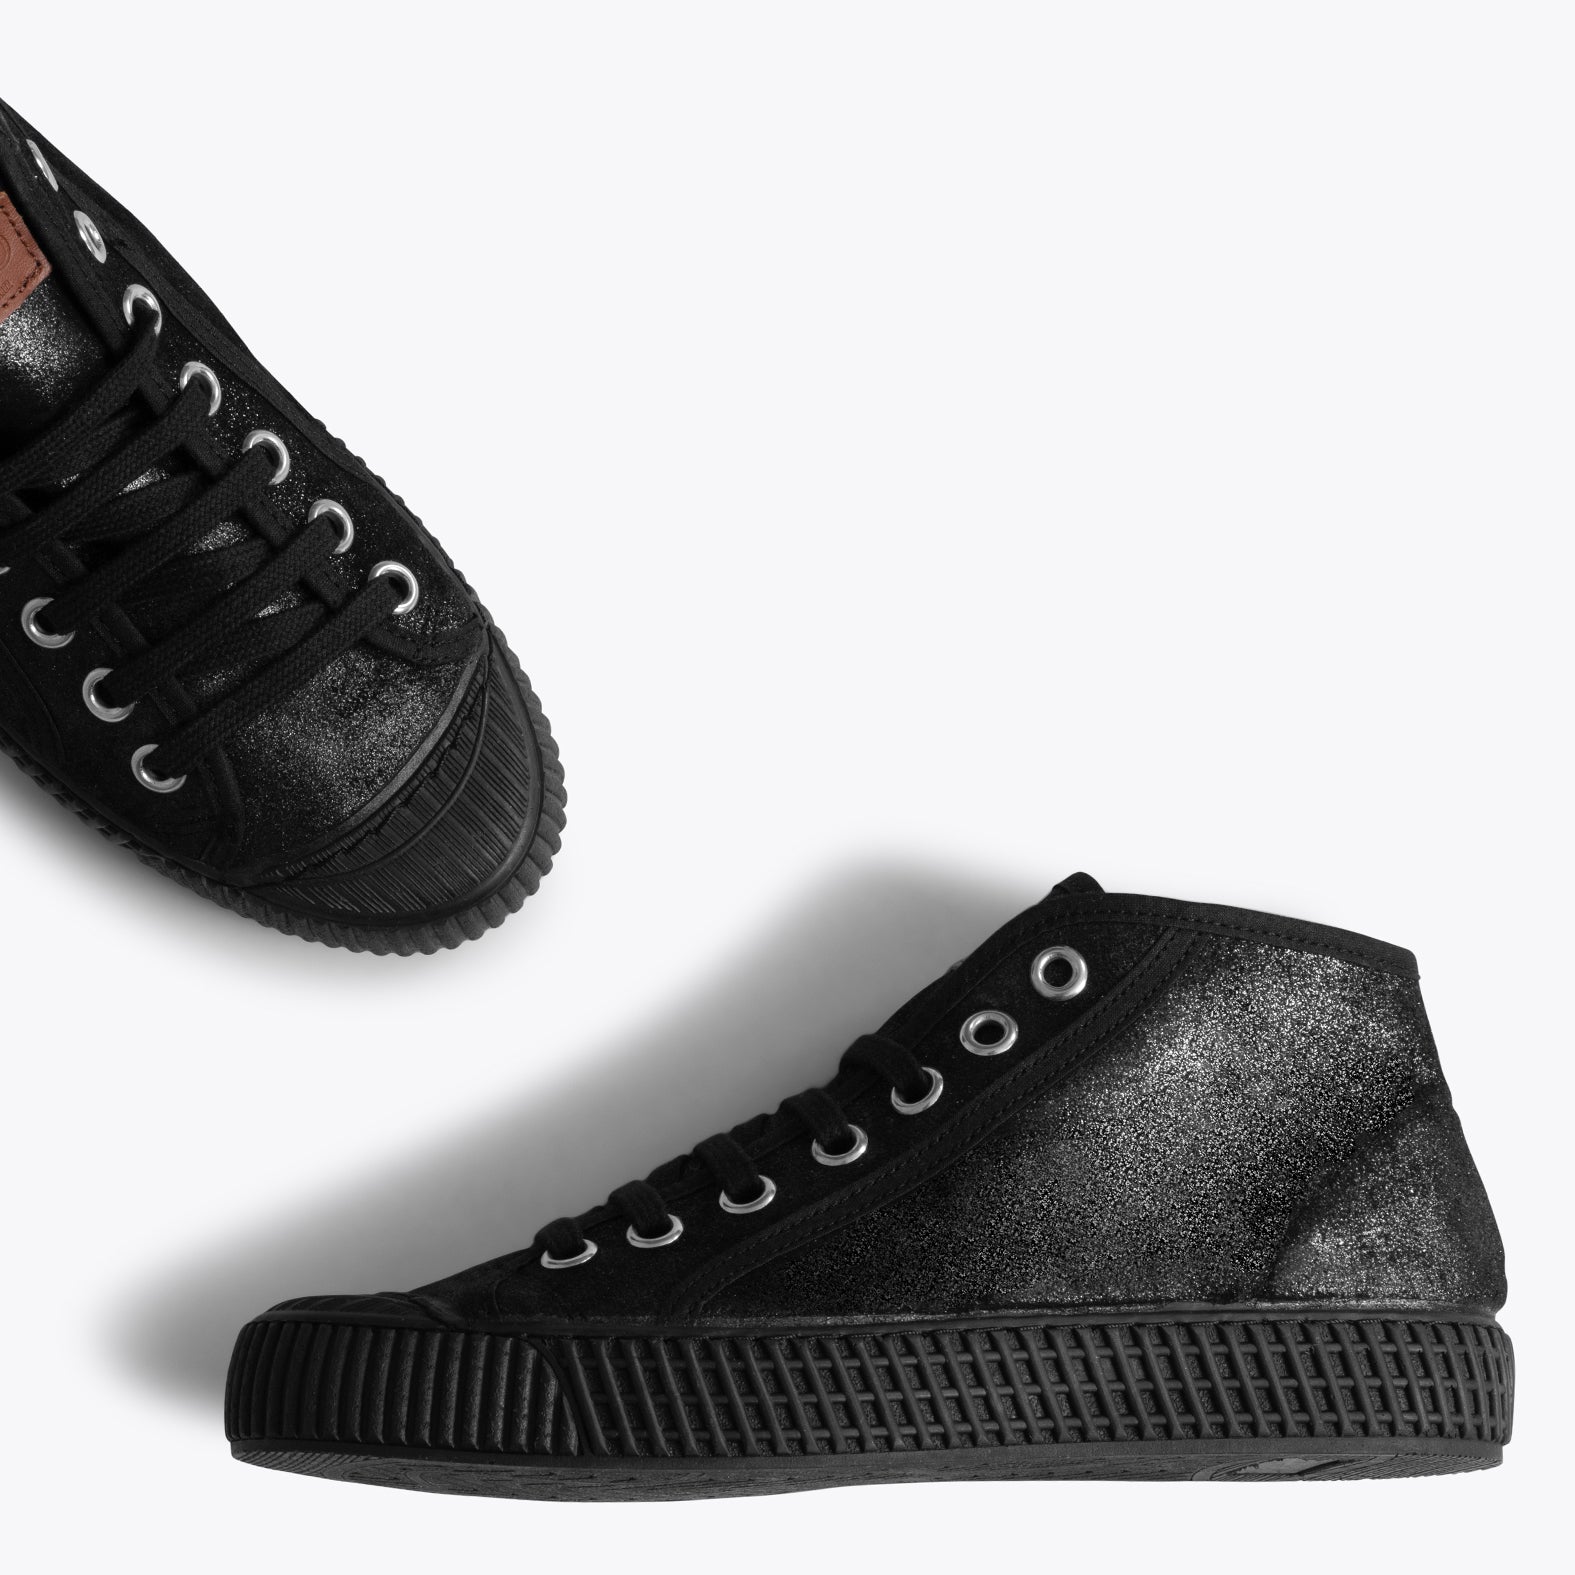 JUMP – BLACK metallic nappa leather sneakers